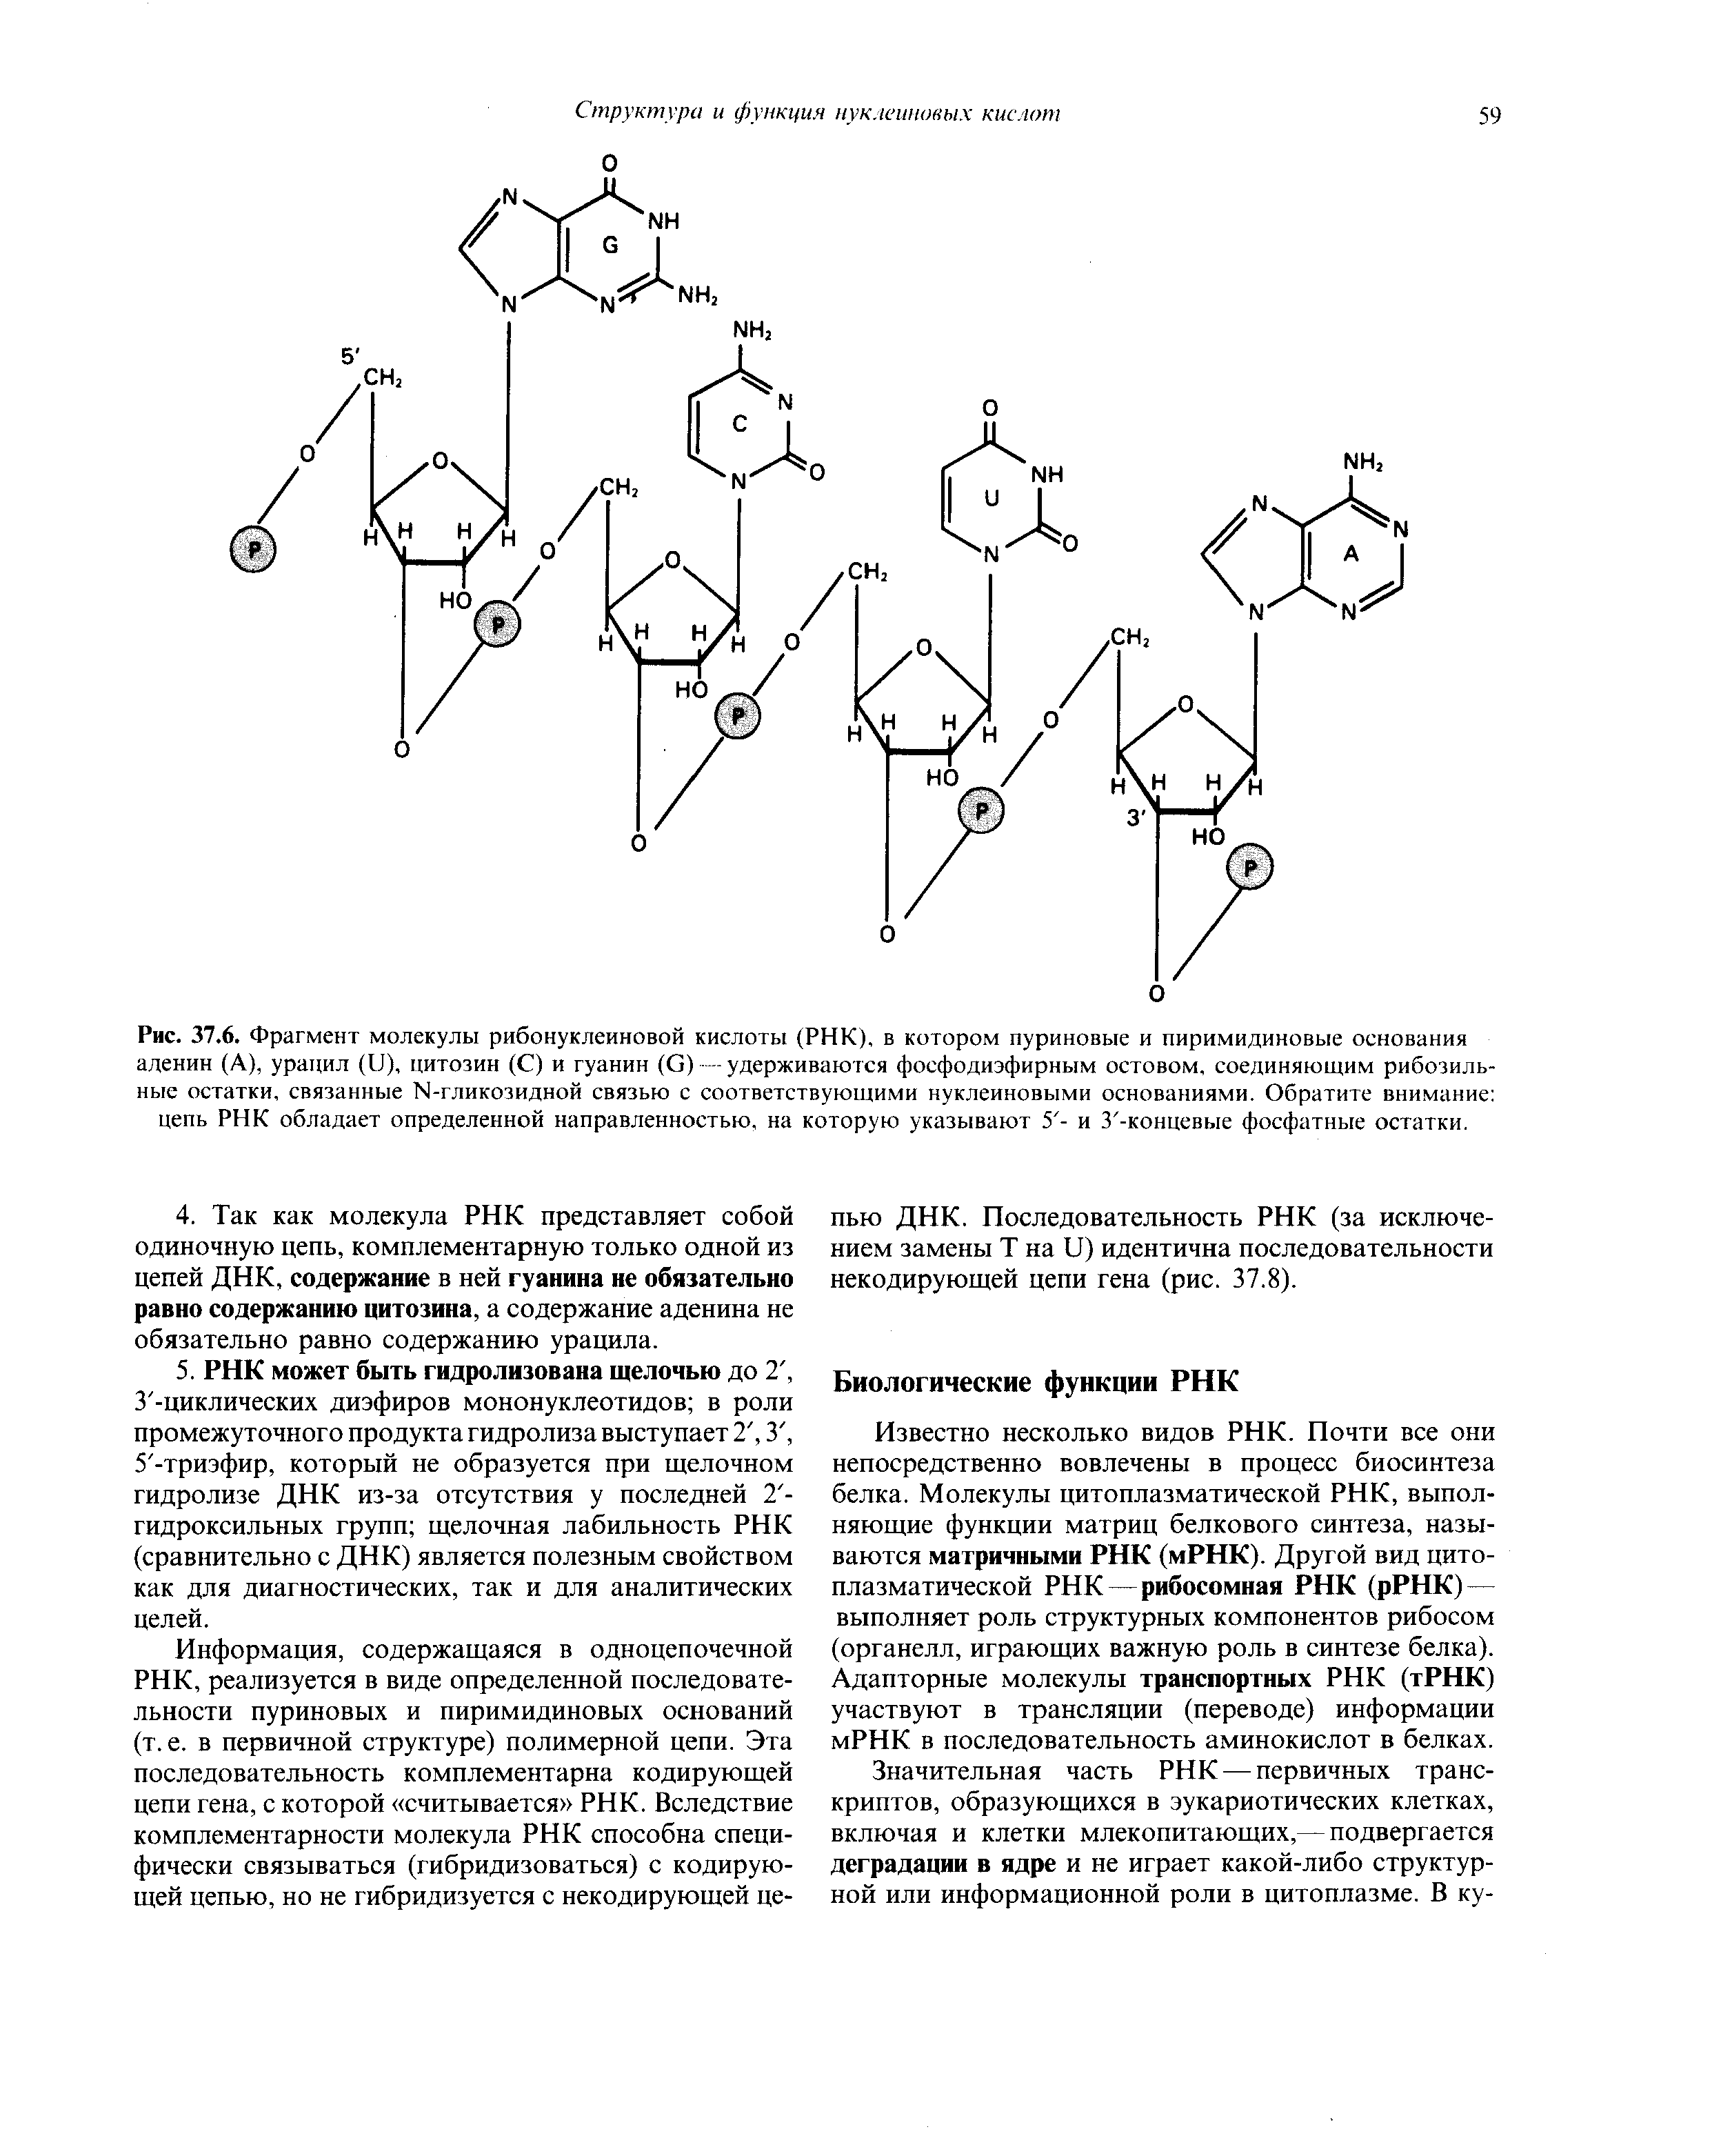 Рис. 37.6. Фрагмент молекулы рибонуклеиновой кислоты (РНК), в котором пуриновые и пиримидиновые основания аденин (А), урацил (и), цитозин (С) и гуанин (С).удерживаются фосфодиэфирным остовом, соединяющим рибозиль-...